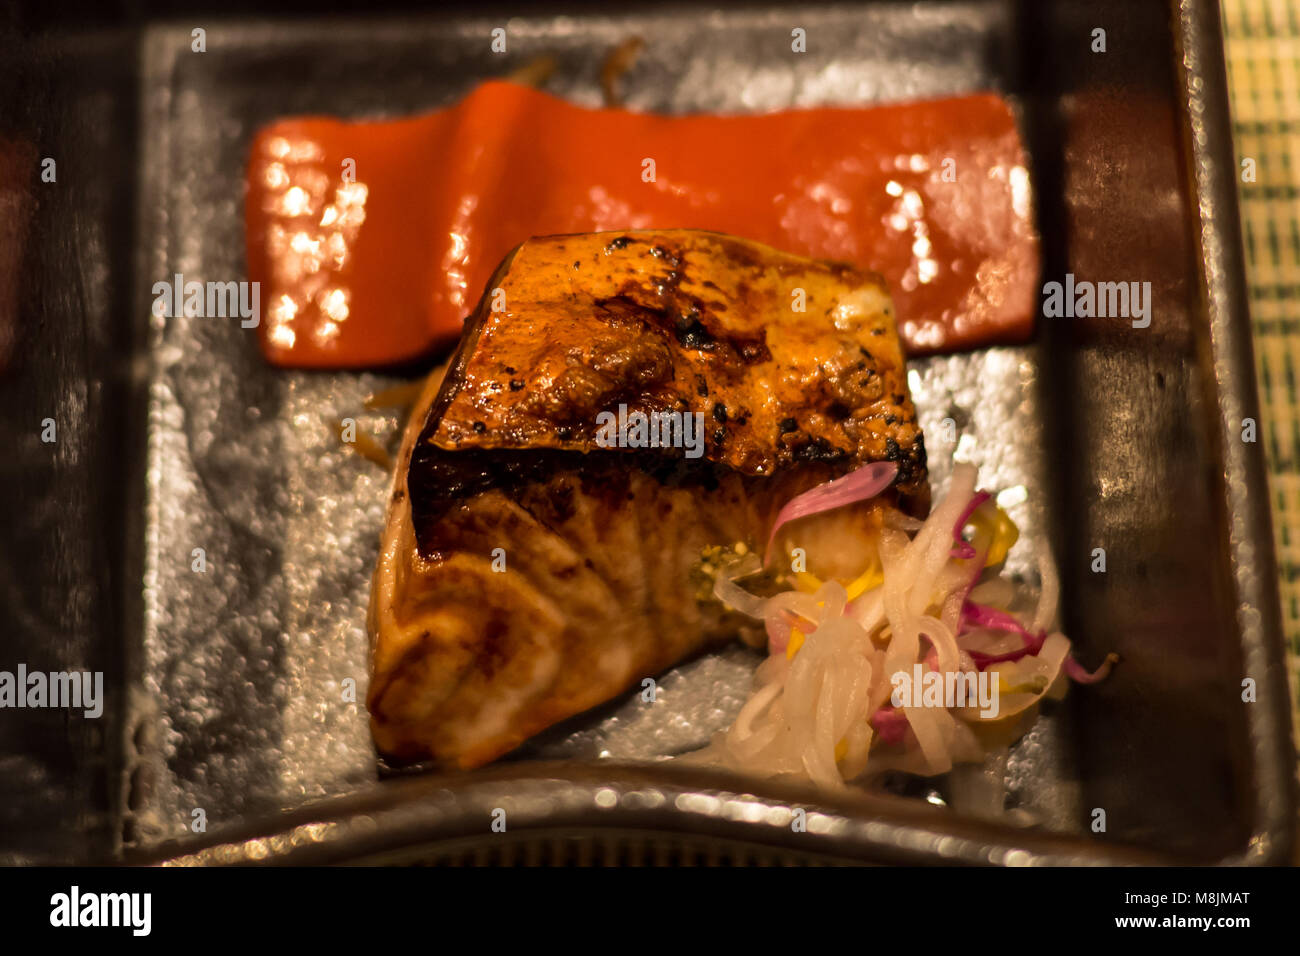 Queue jaune frit poisson servi dans le cadre d'un dîner kaiseki Banque D'Images